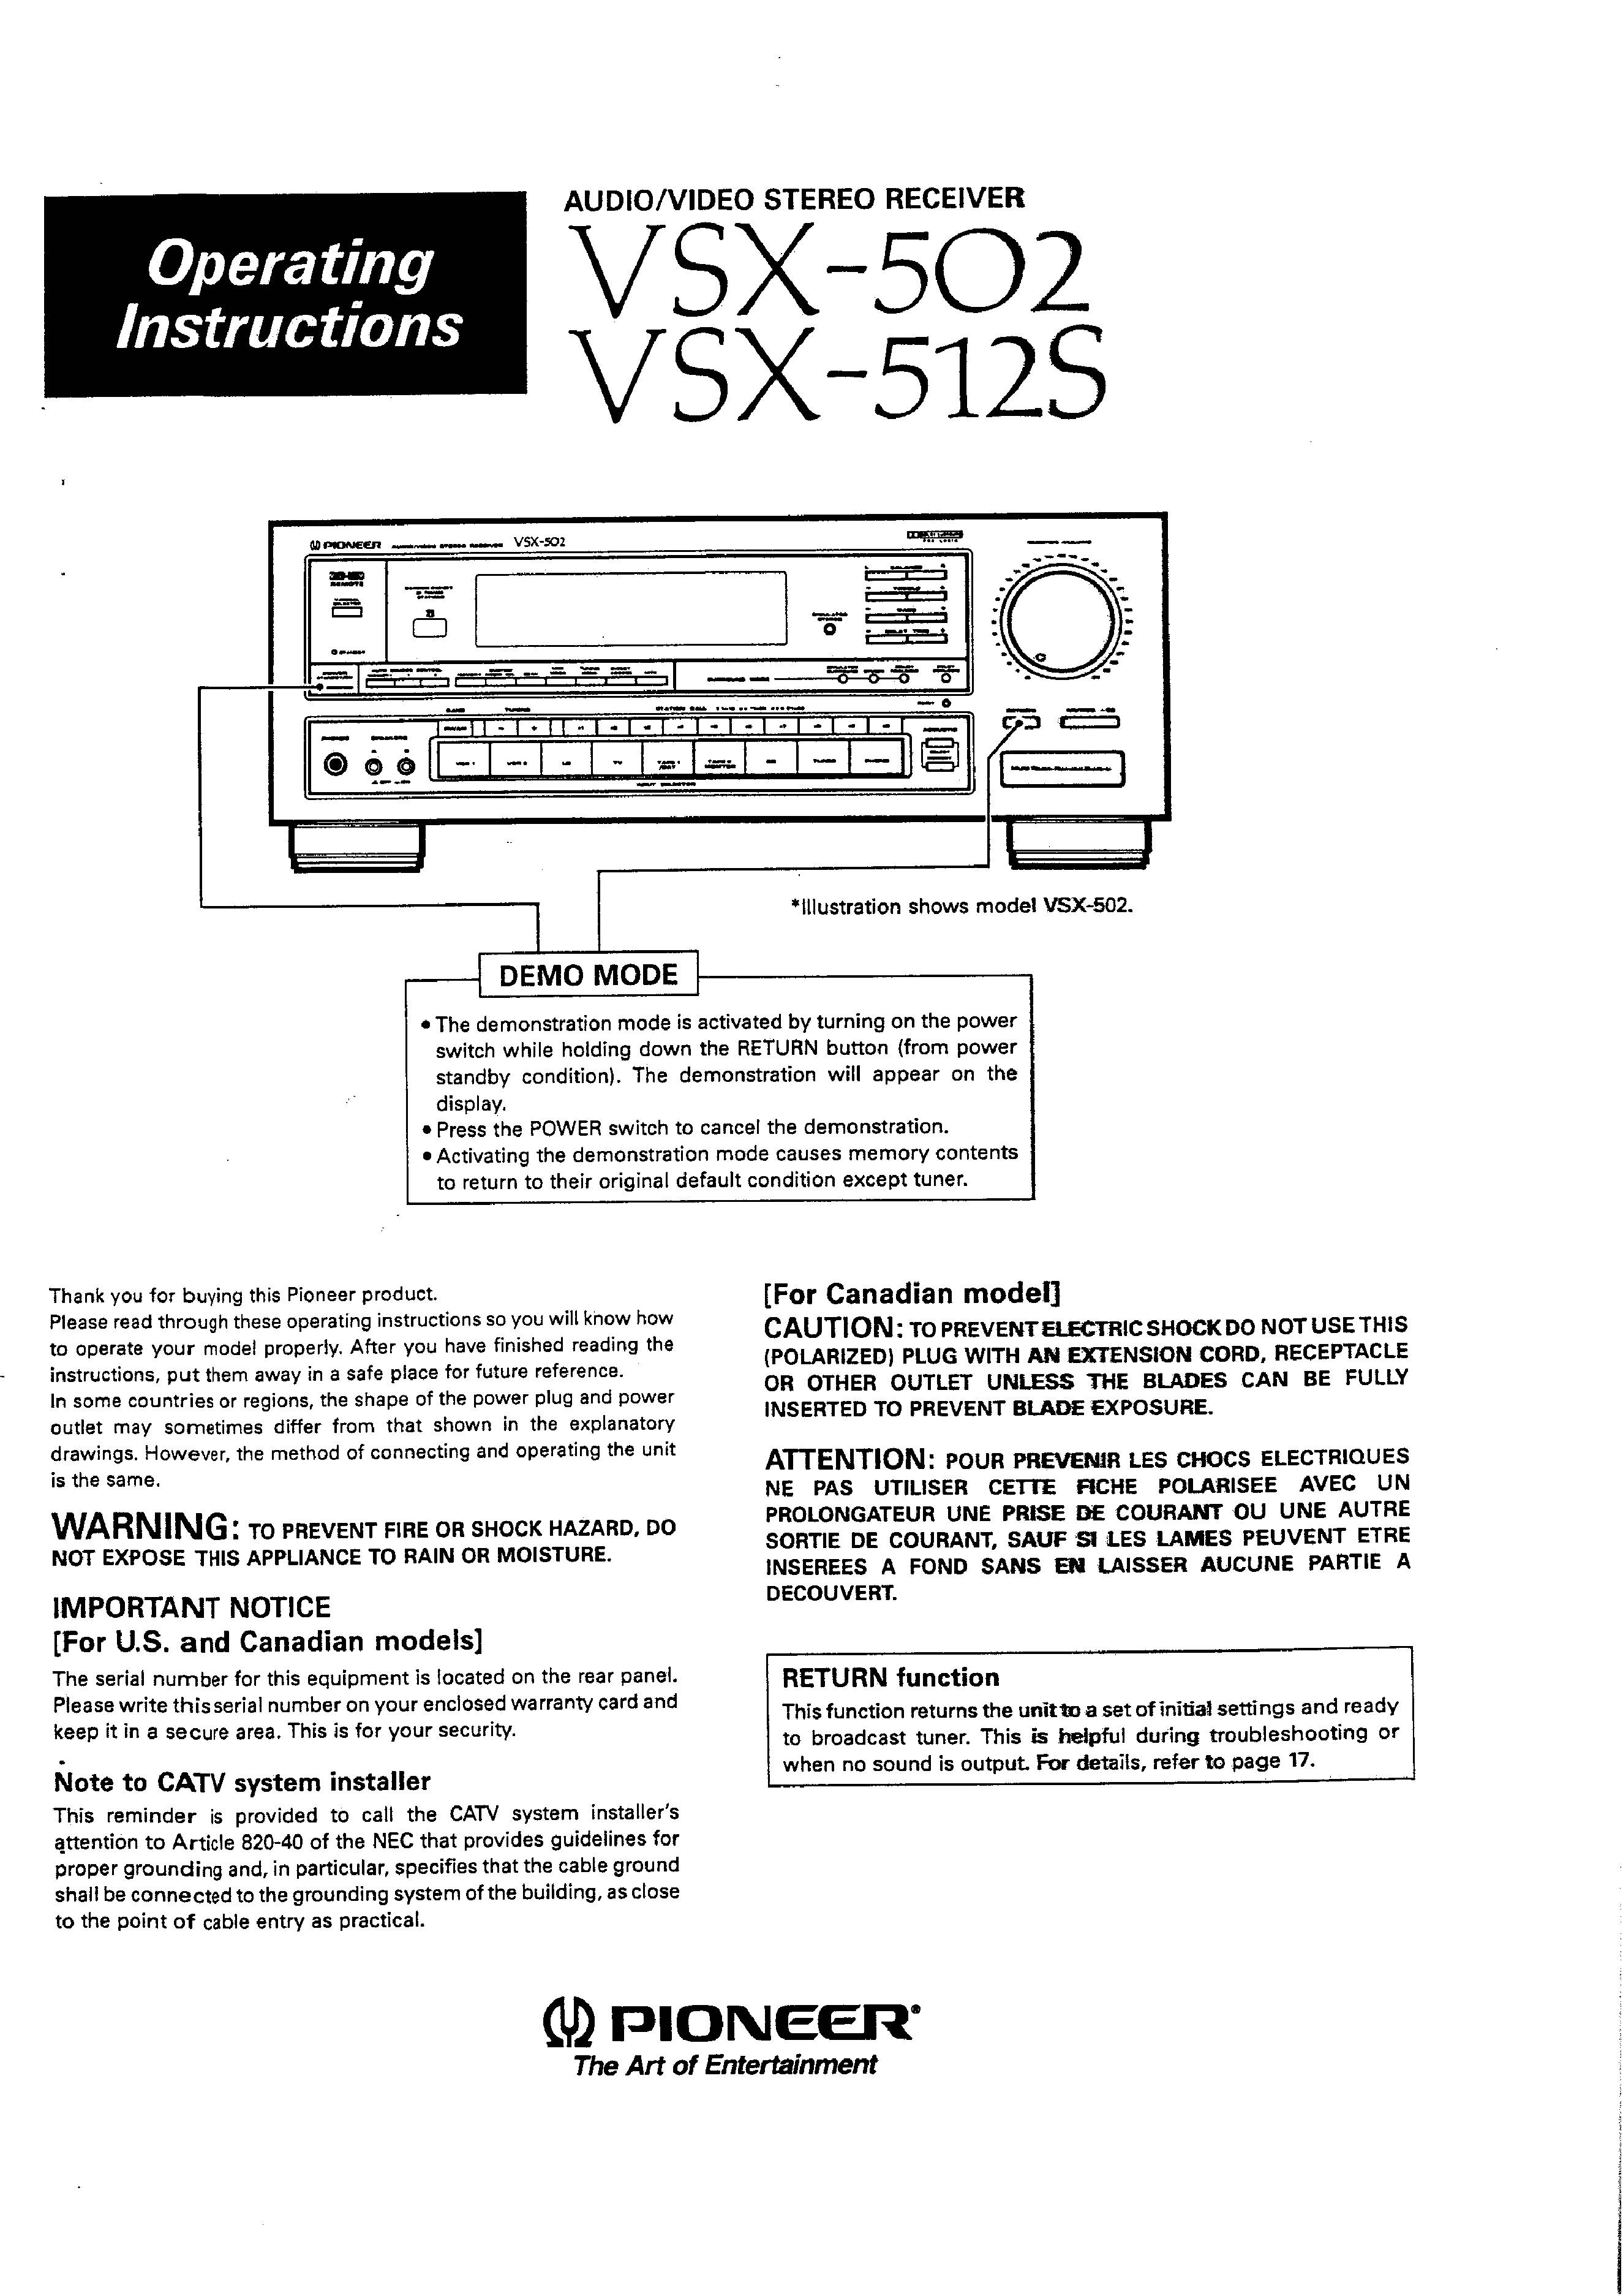 Pioneer VSX-512S